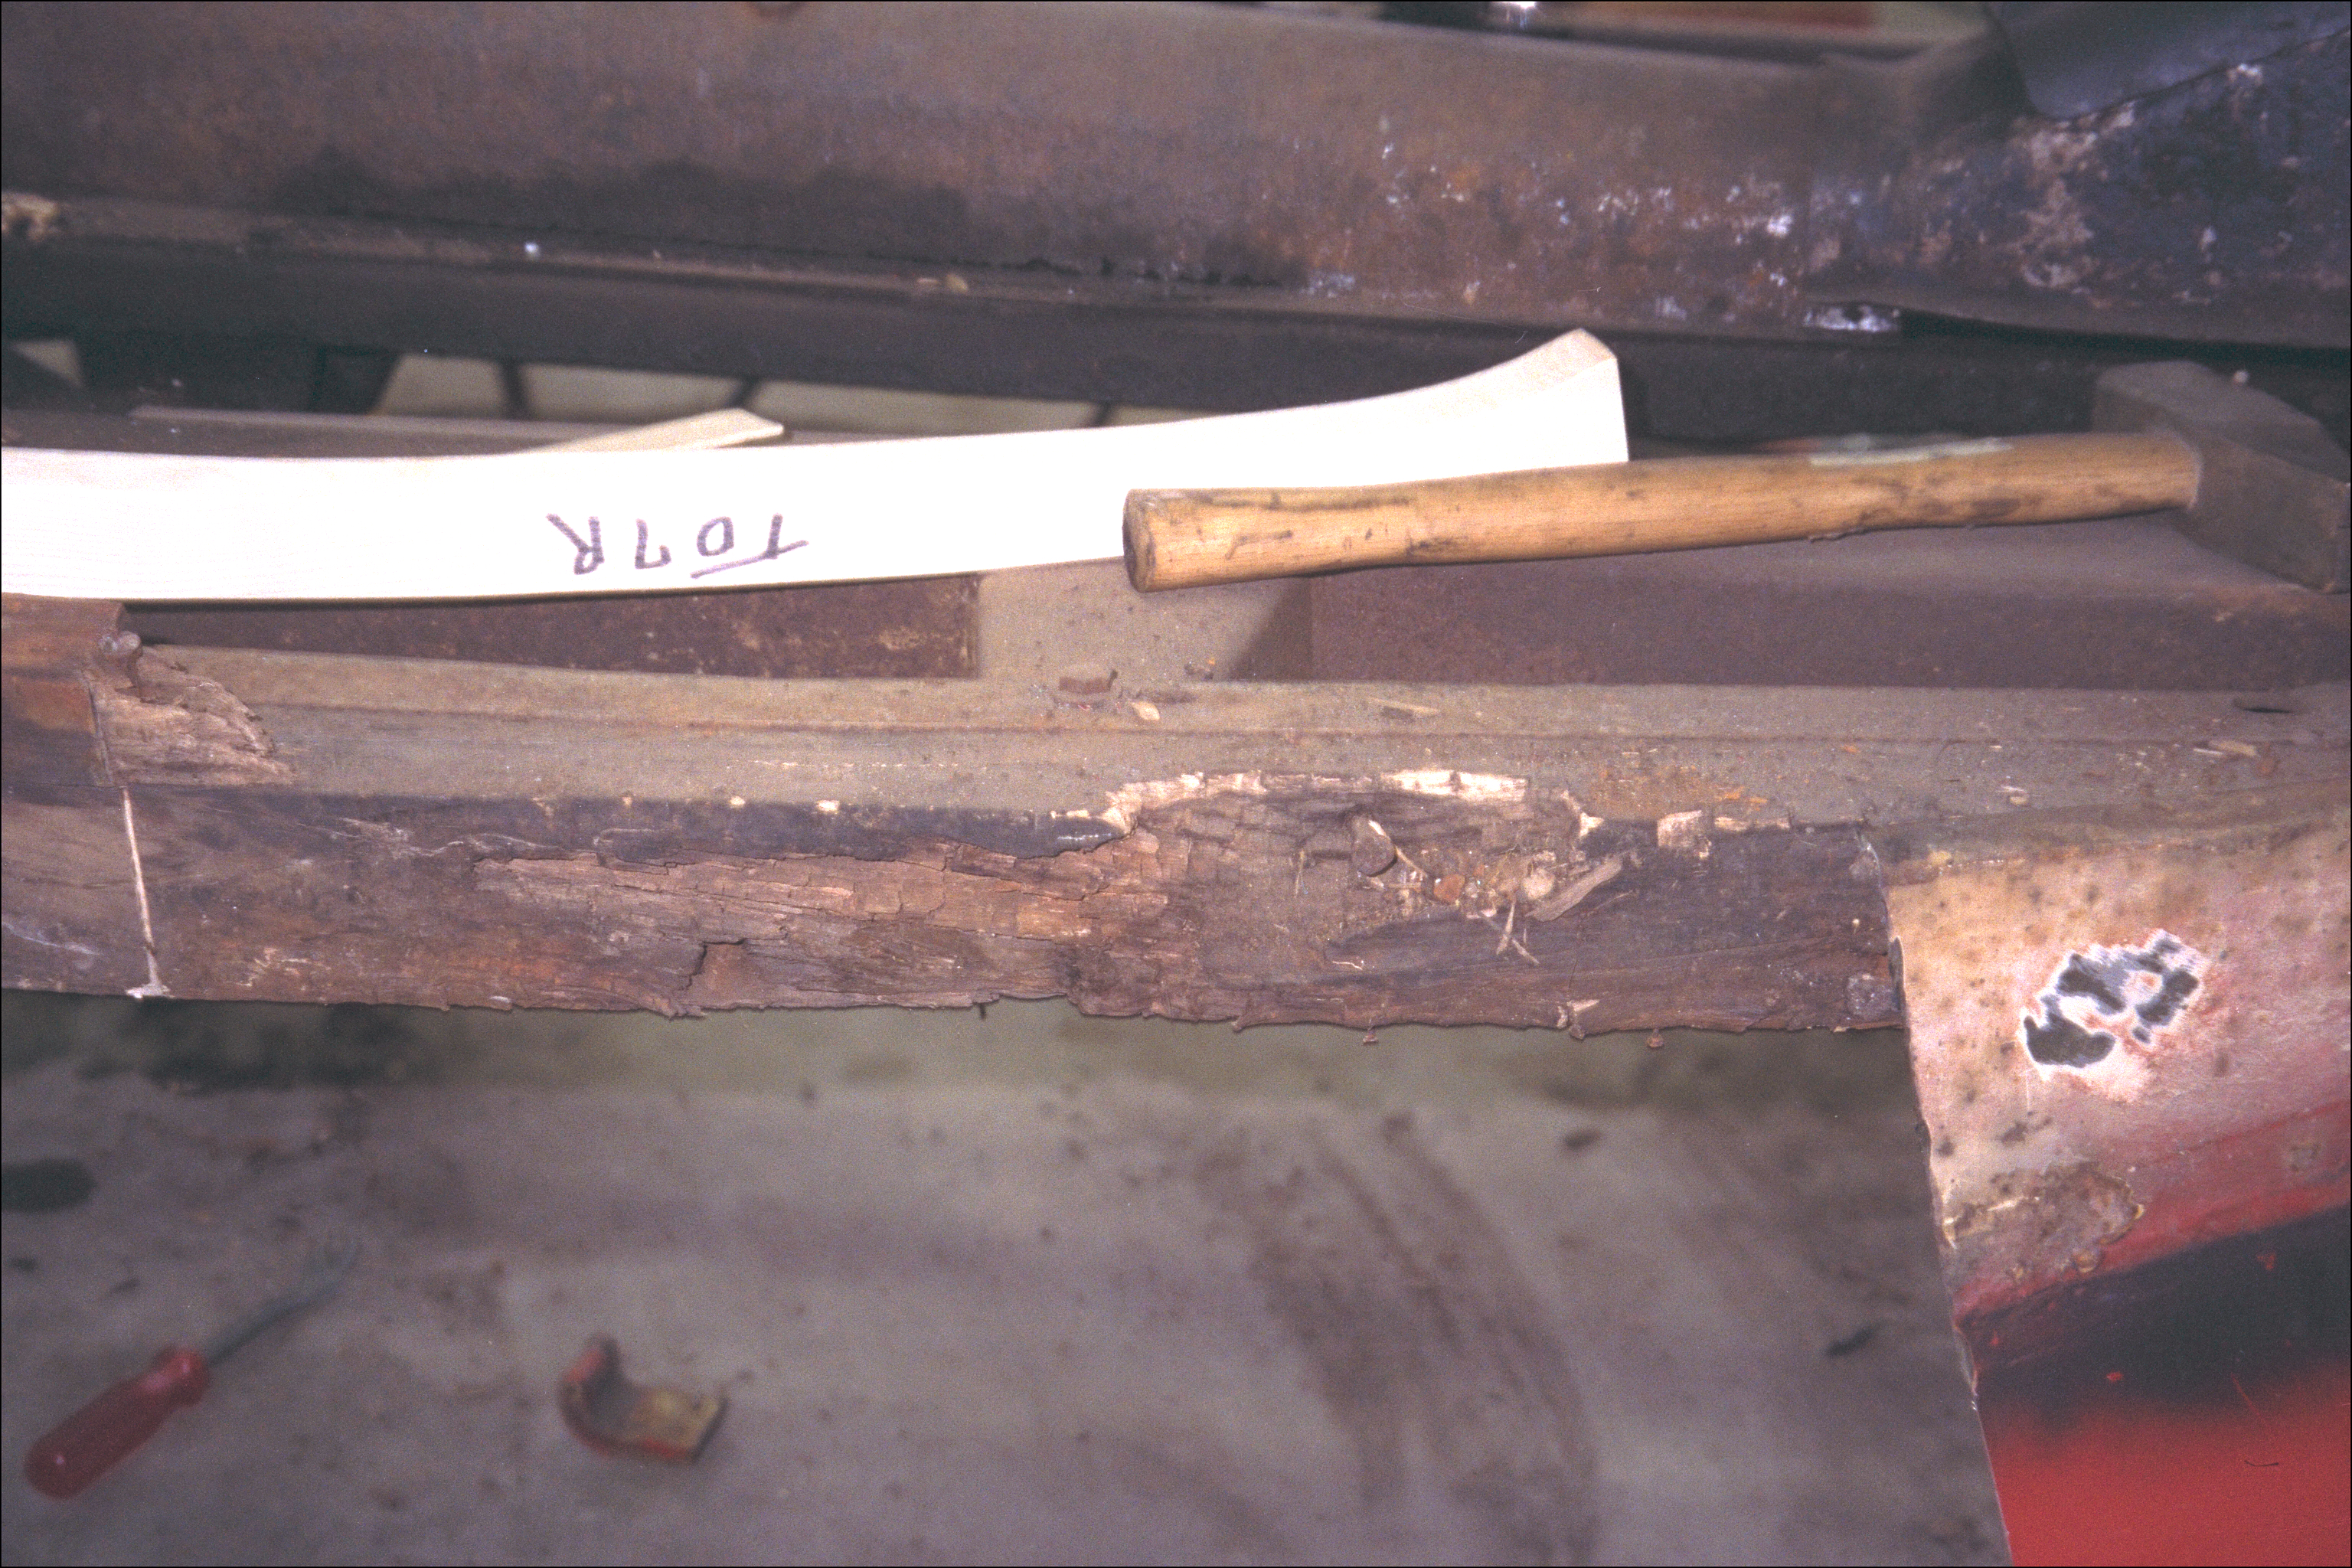 Rot in right wood framing near door sill